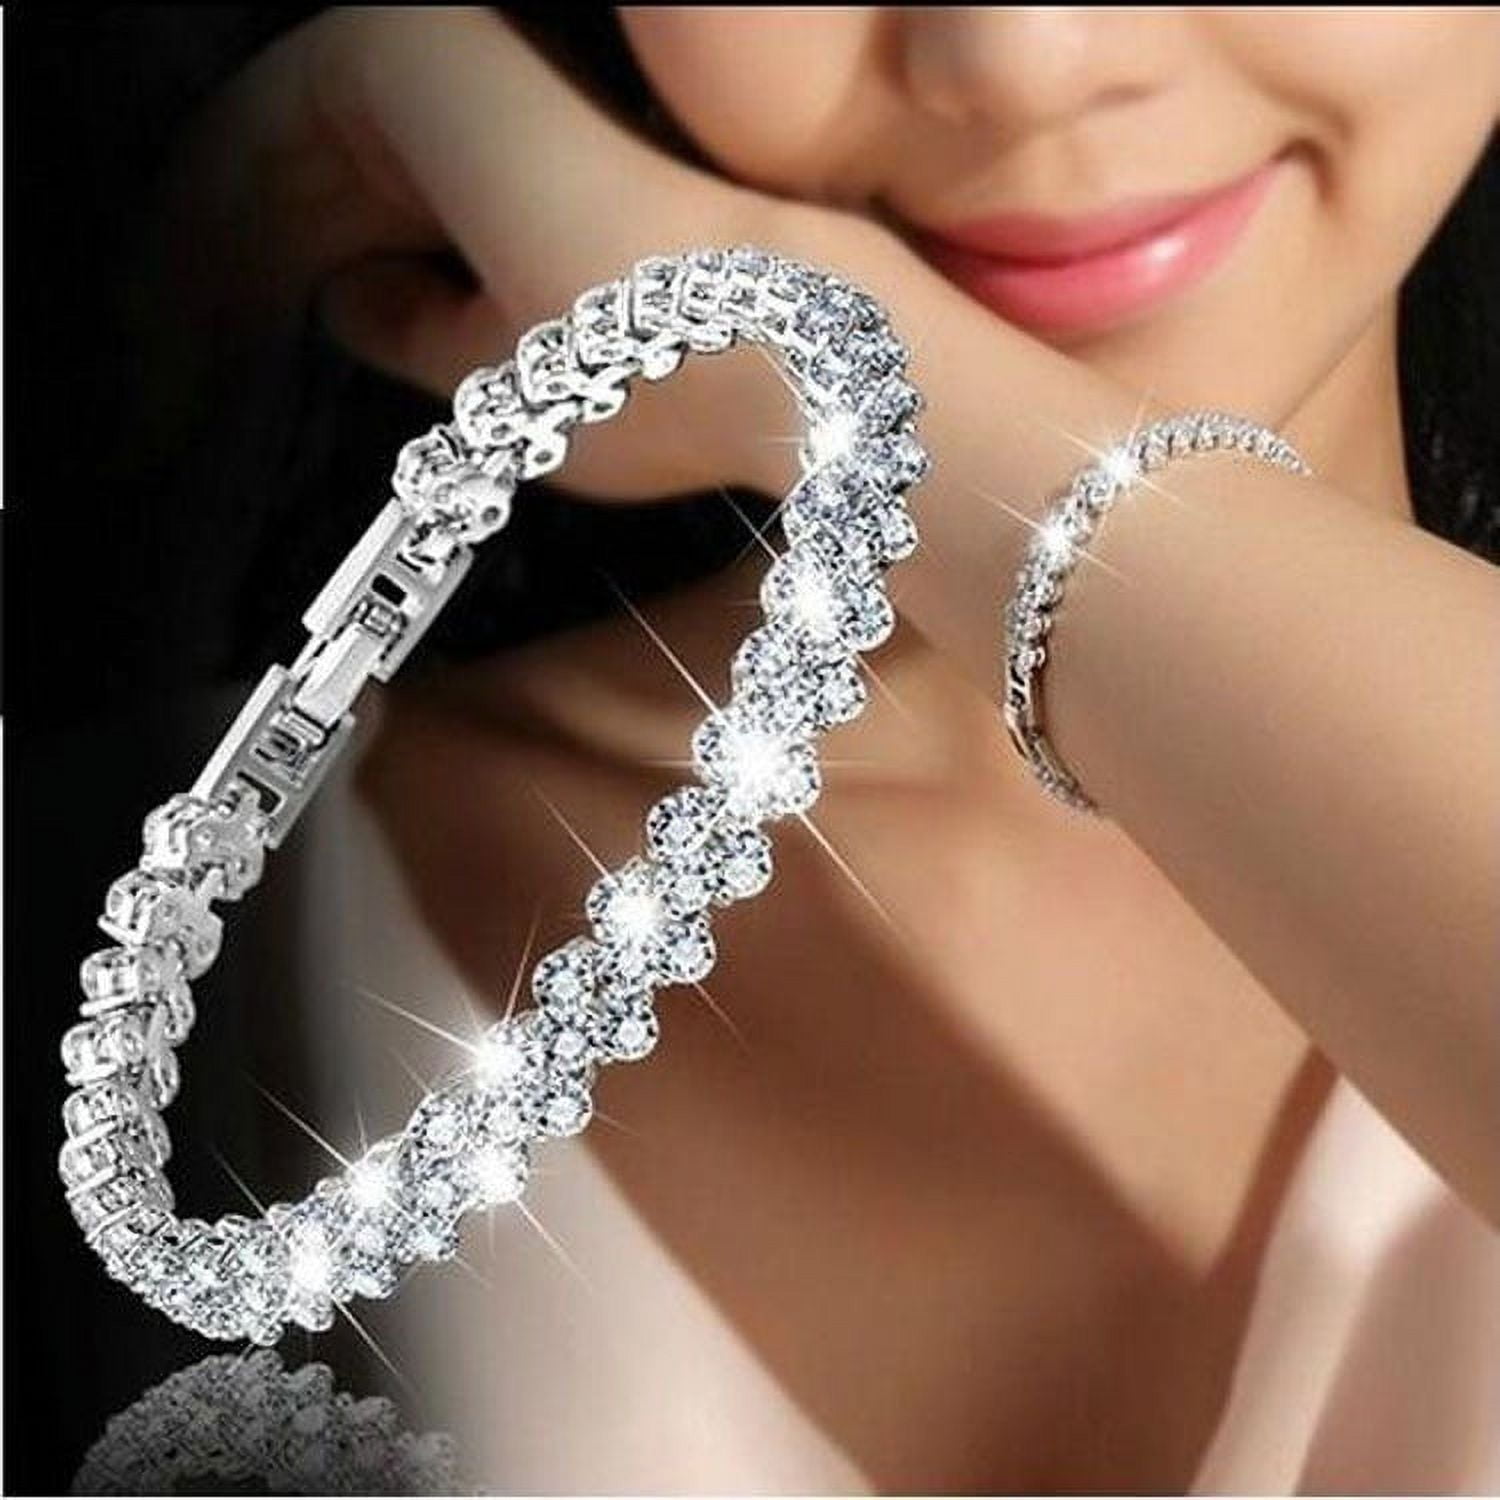 keusn silver bracelet shaped heart women's heart bracelet jewelry diamond  imitation bracelets - Walmart.com